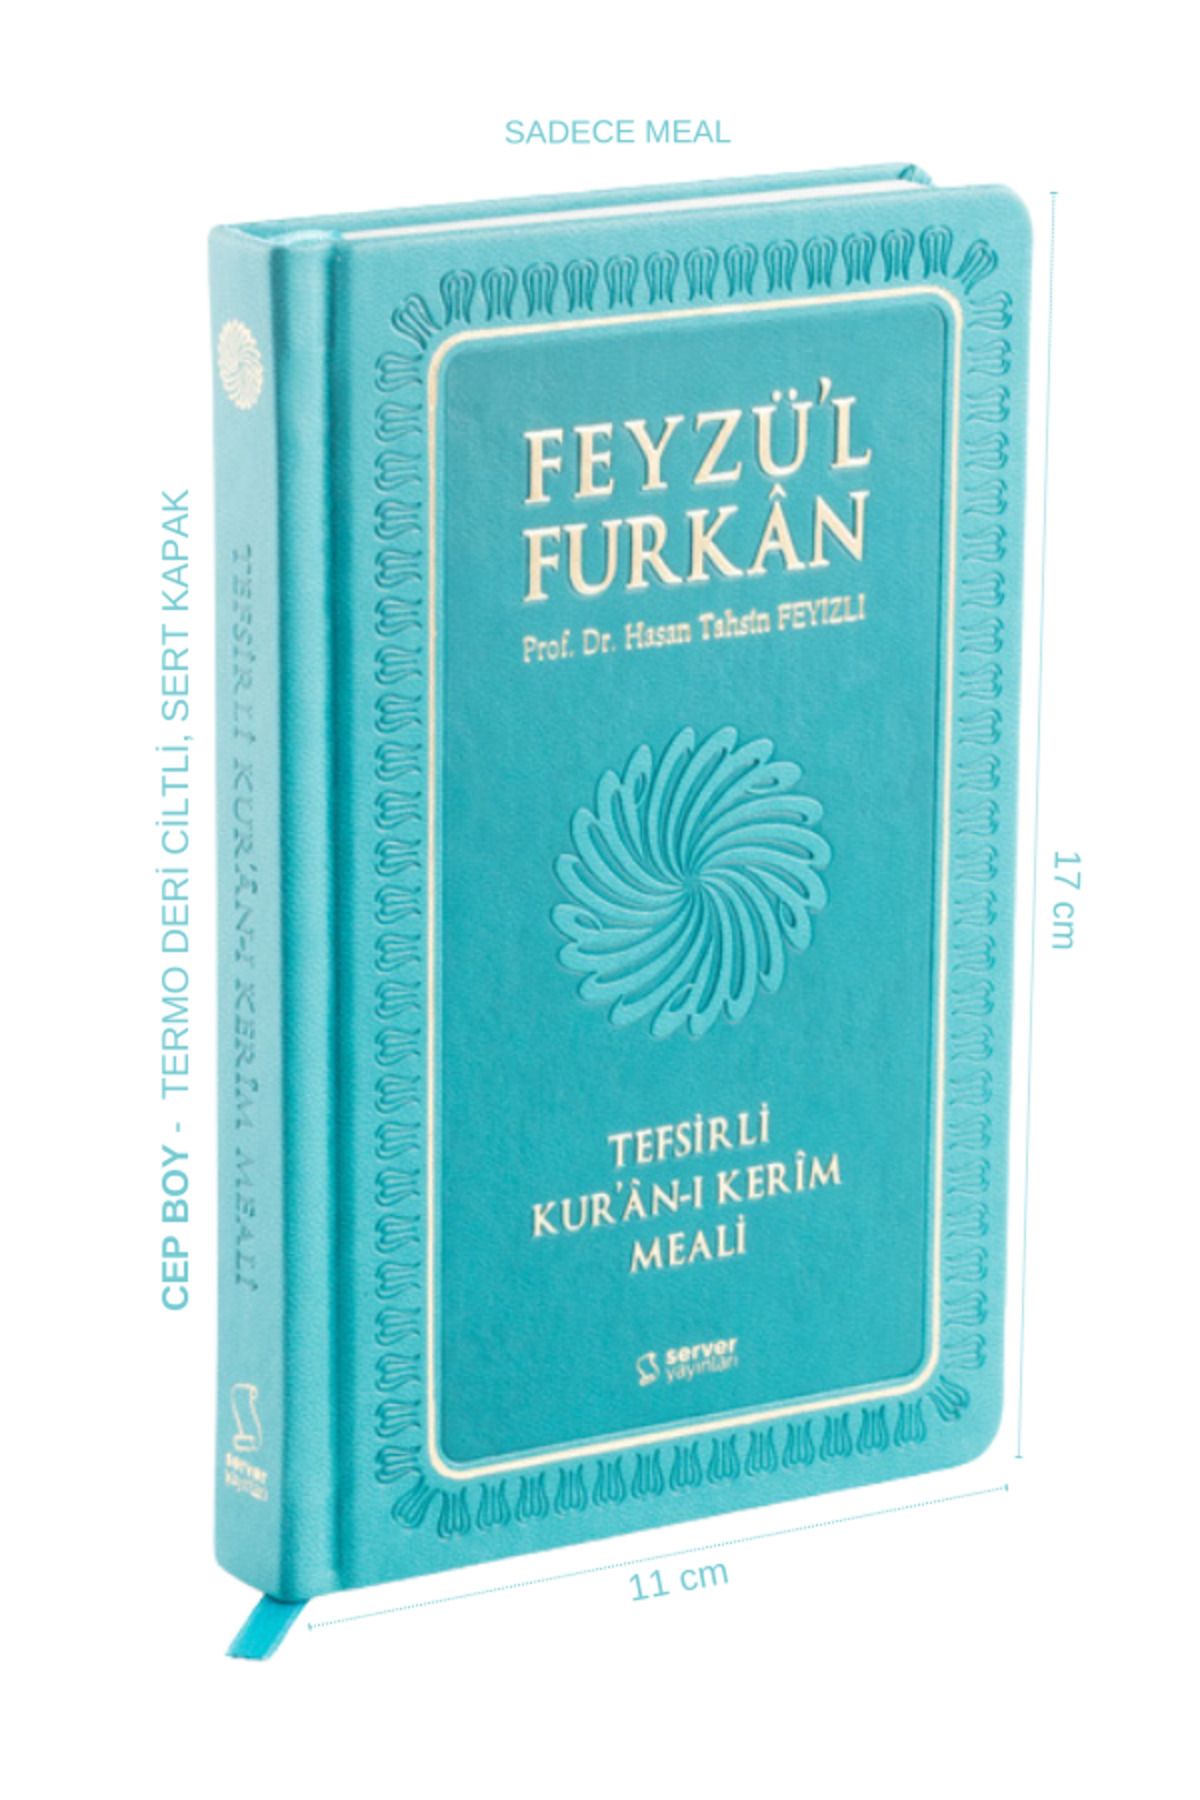 Server Yayınları Feyzü'l Furkan Tefsirli Kur'an-ı Kerim Meali (CEP BOY-SADECE MEAL-CİLTLİ) Turkuaz